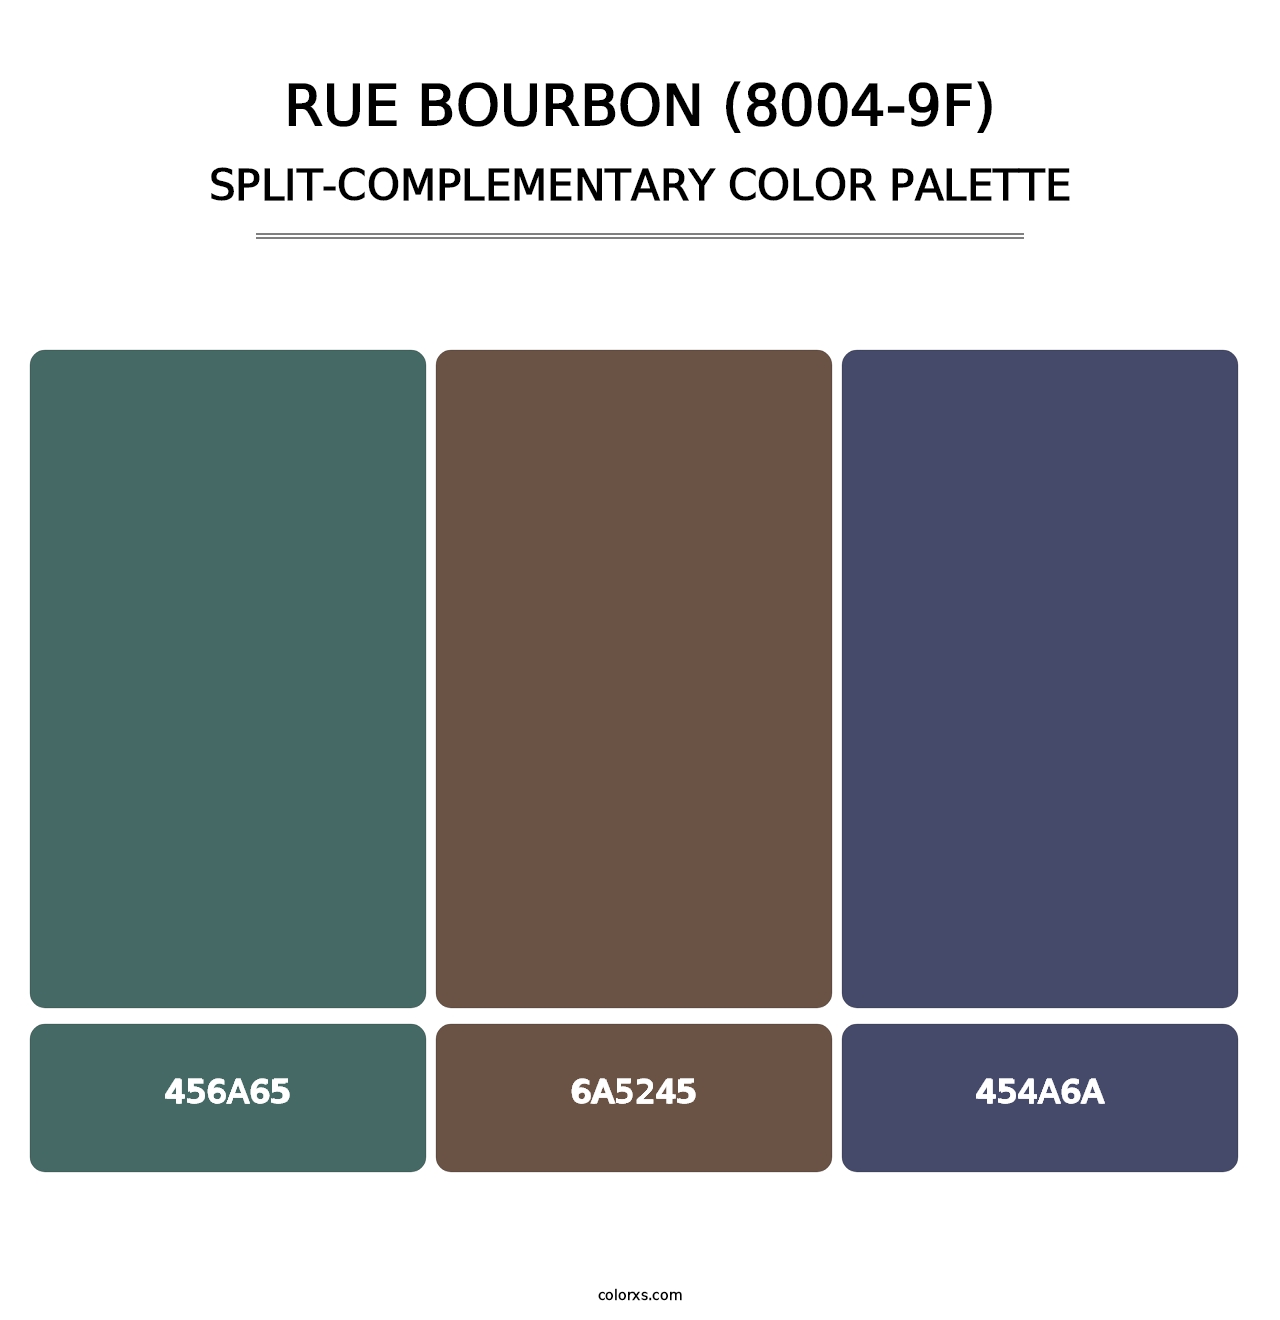 Rue Bourbon (8004-9F) - Split-Complementary Color Palette